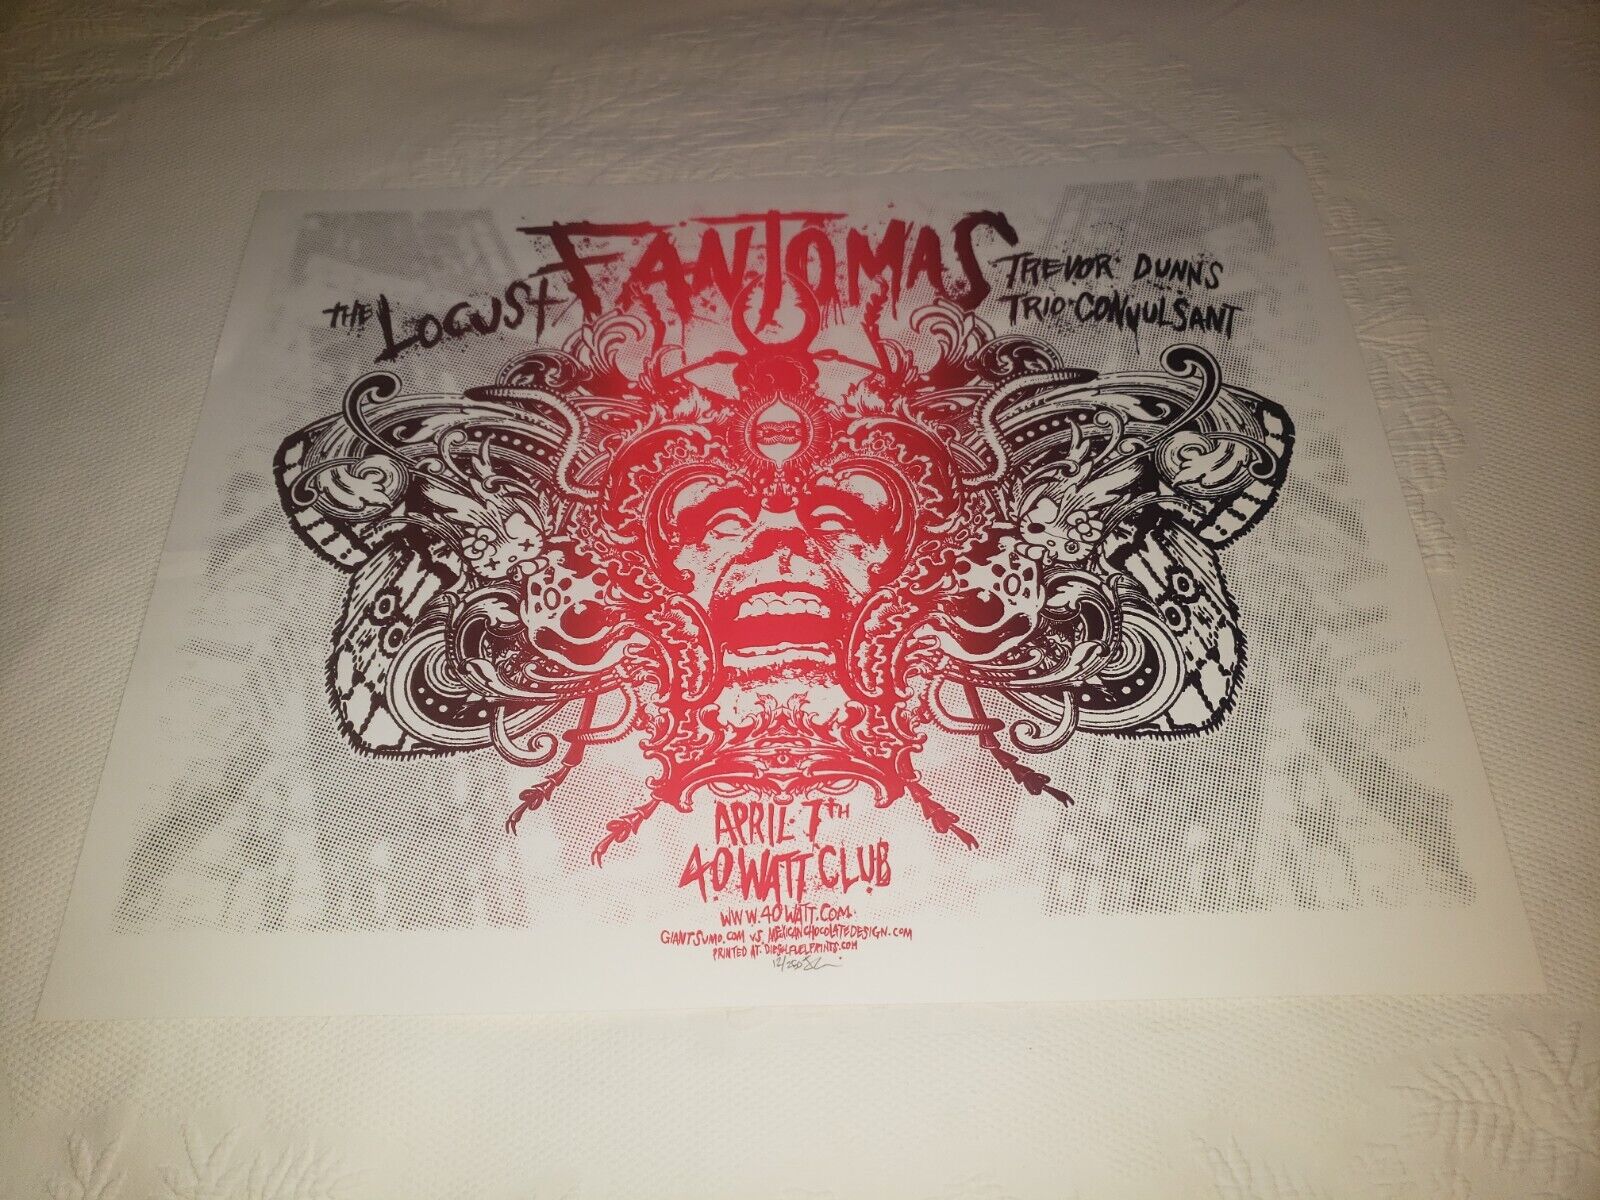 Locust Fantomas Trevor Dunns Trio 40 Watt Club Signed & Numbered Poster